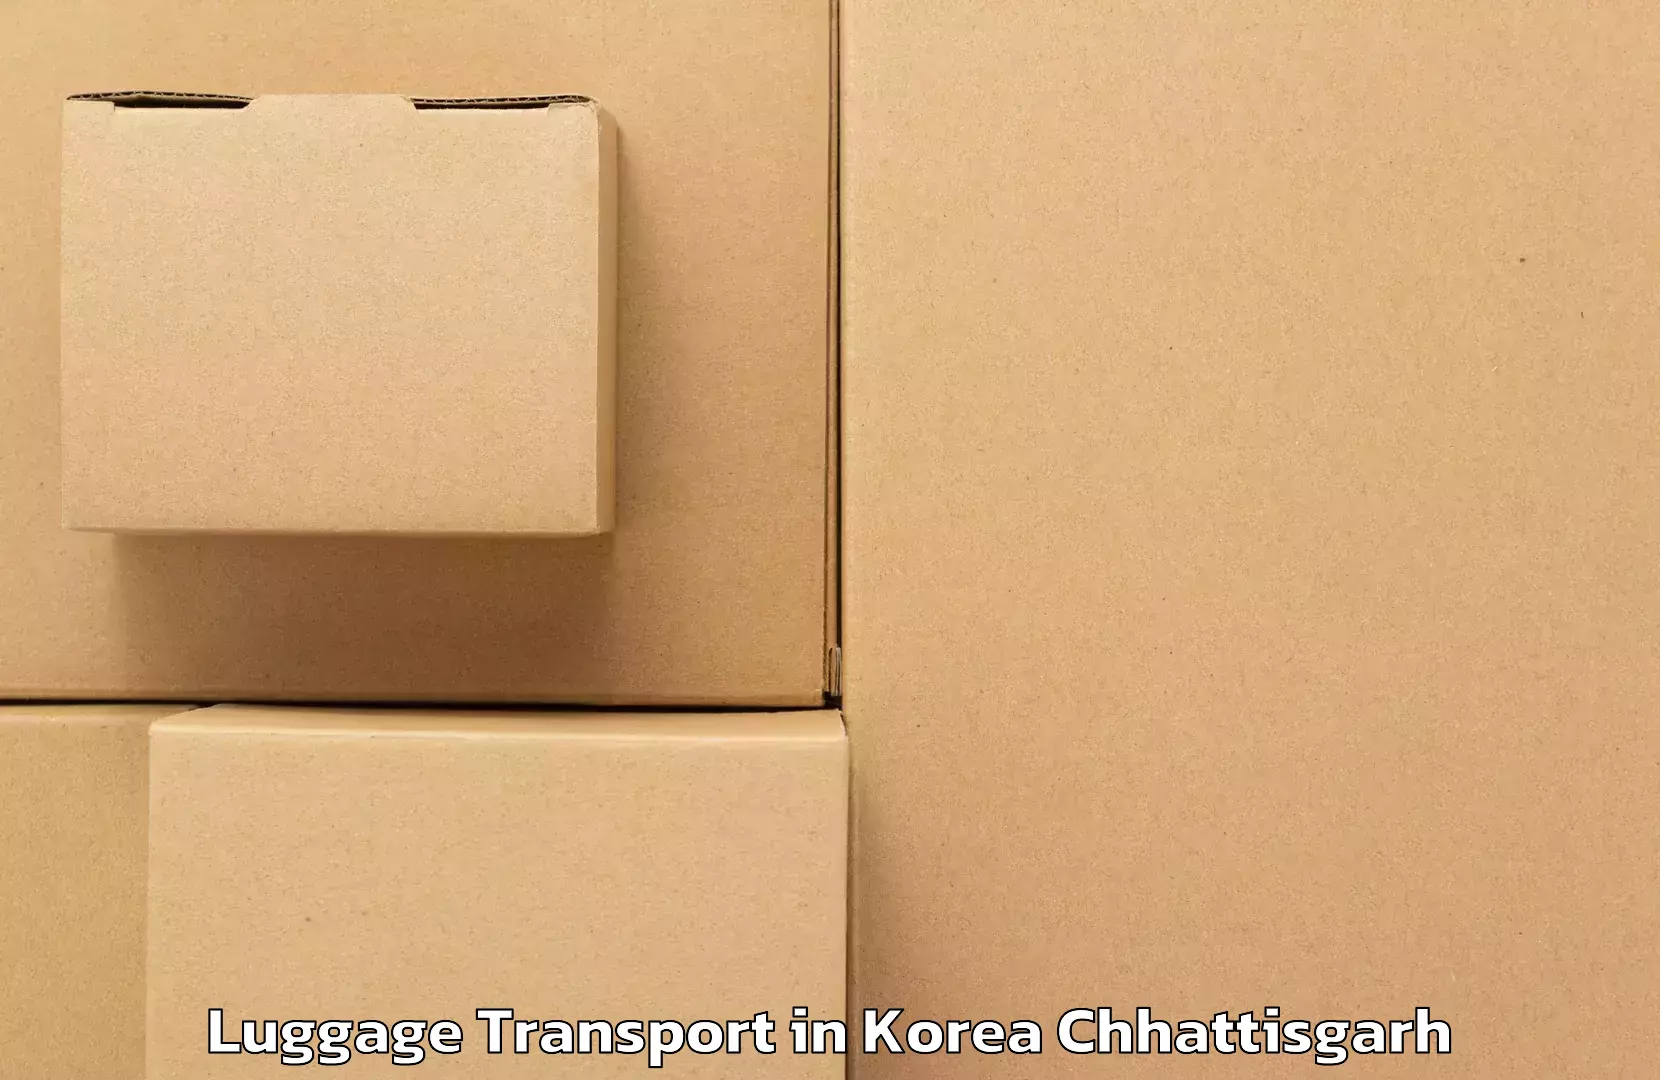 Luggage delivery calculator in Korea Chhattisgarh